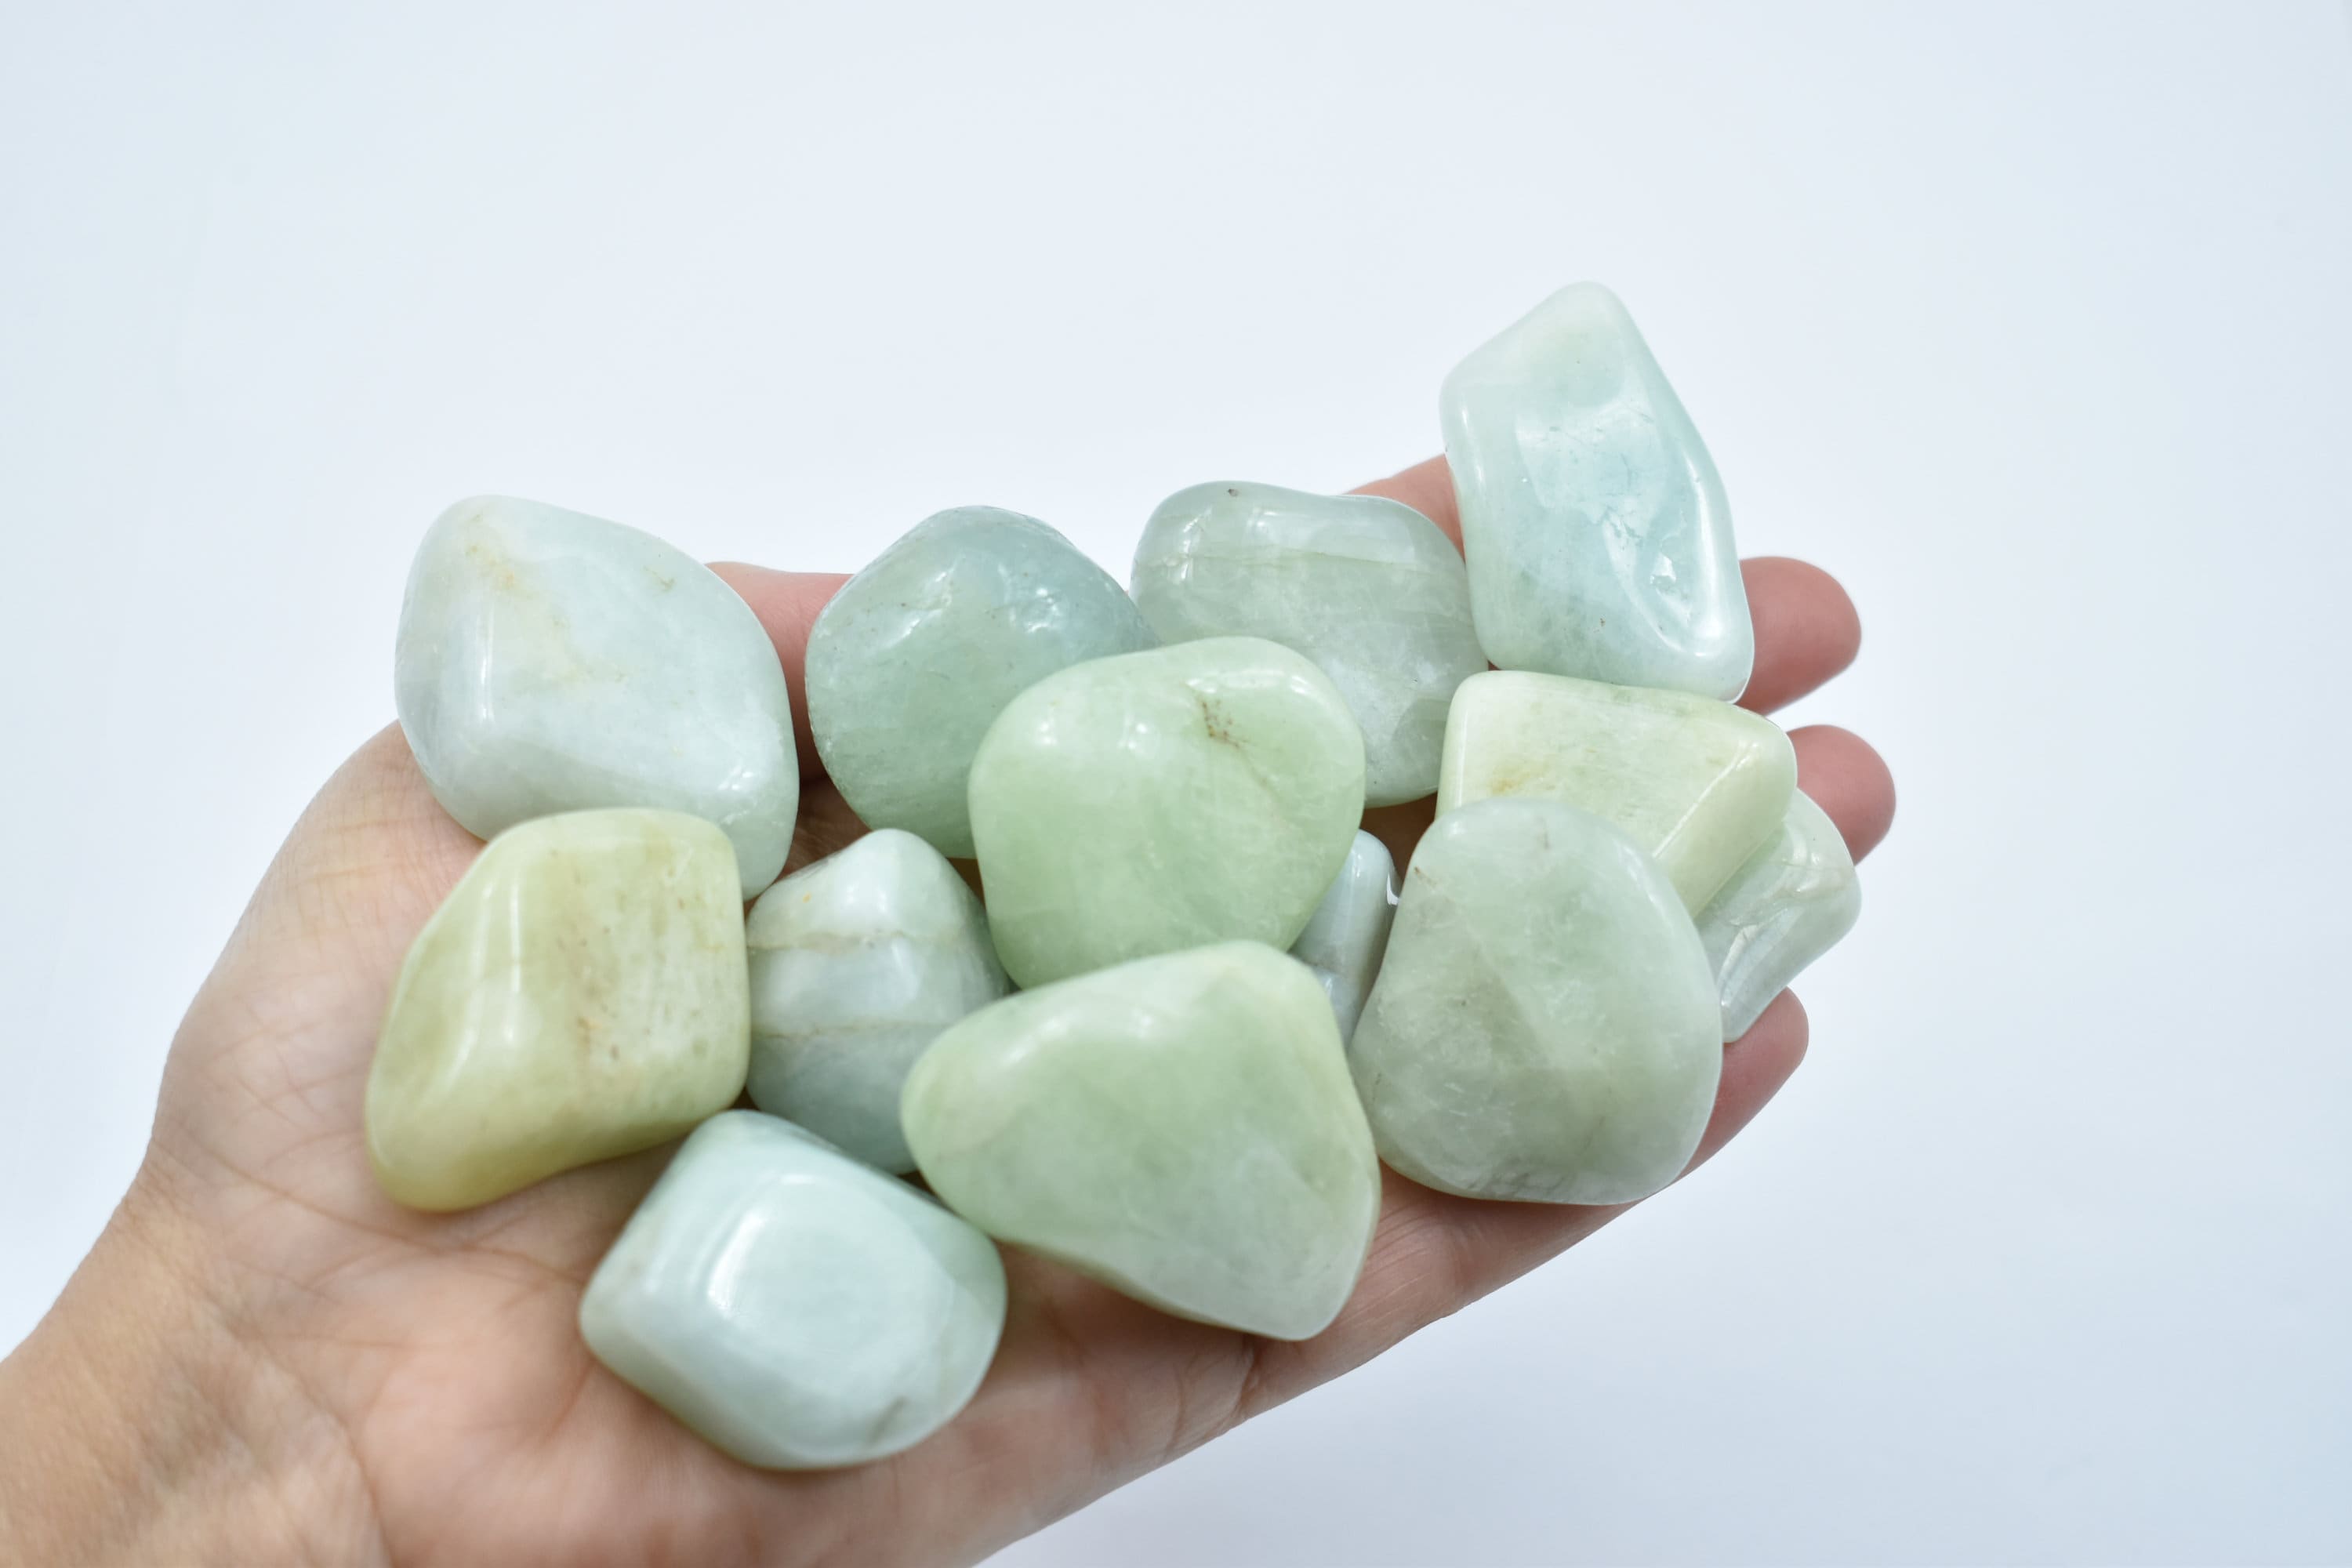 Aquamarine Polished Heart Gemstones Crystals 3 Sizes 